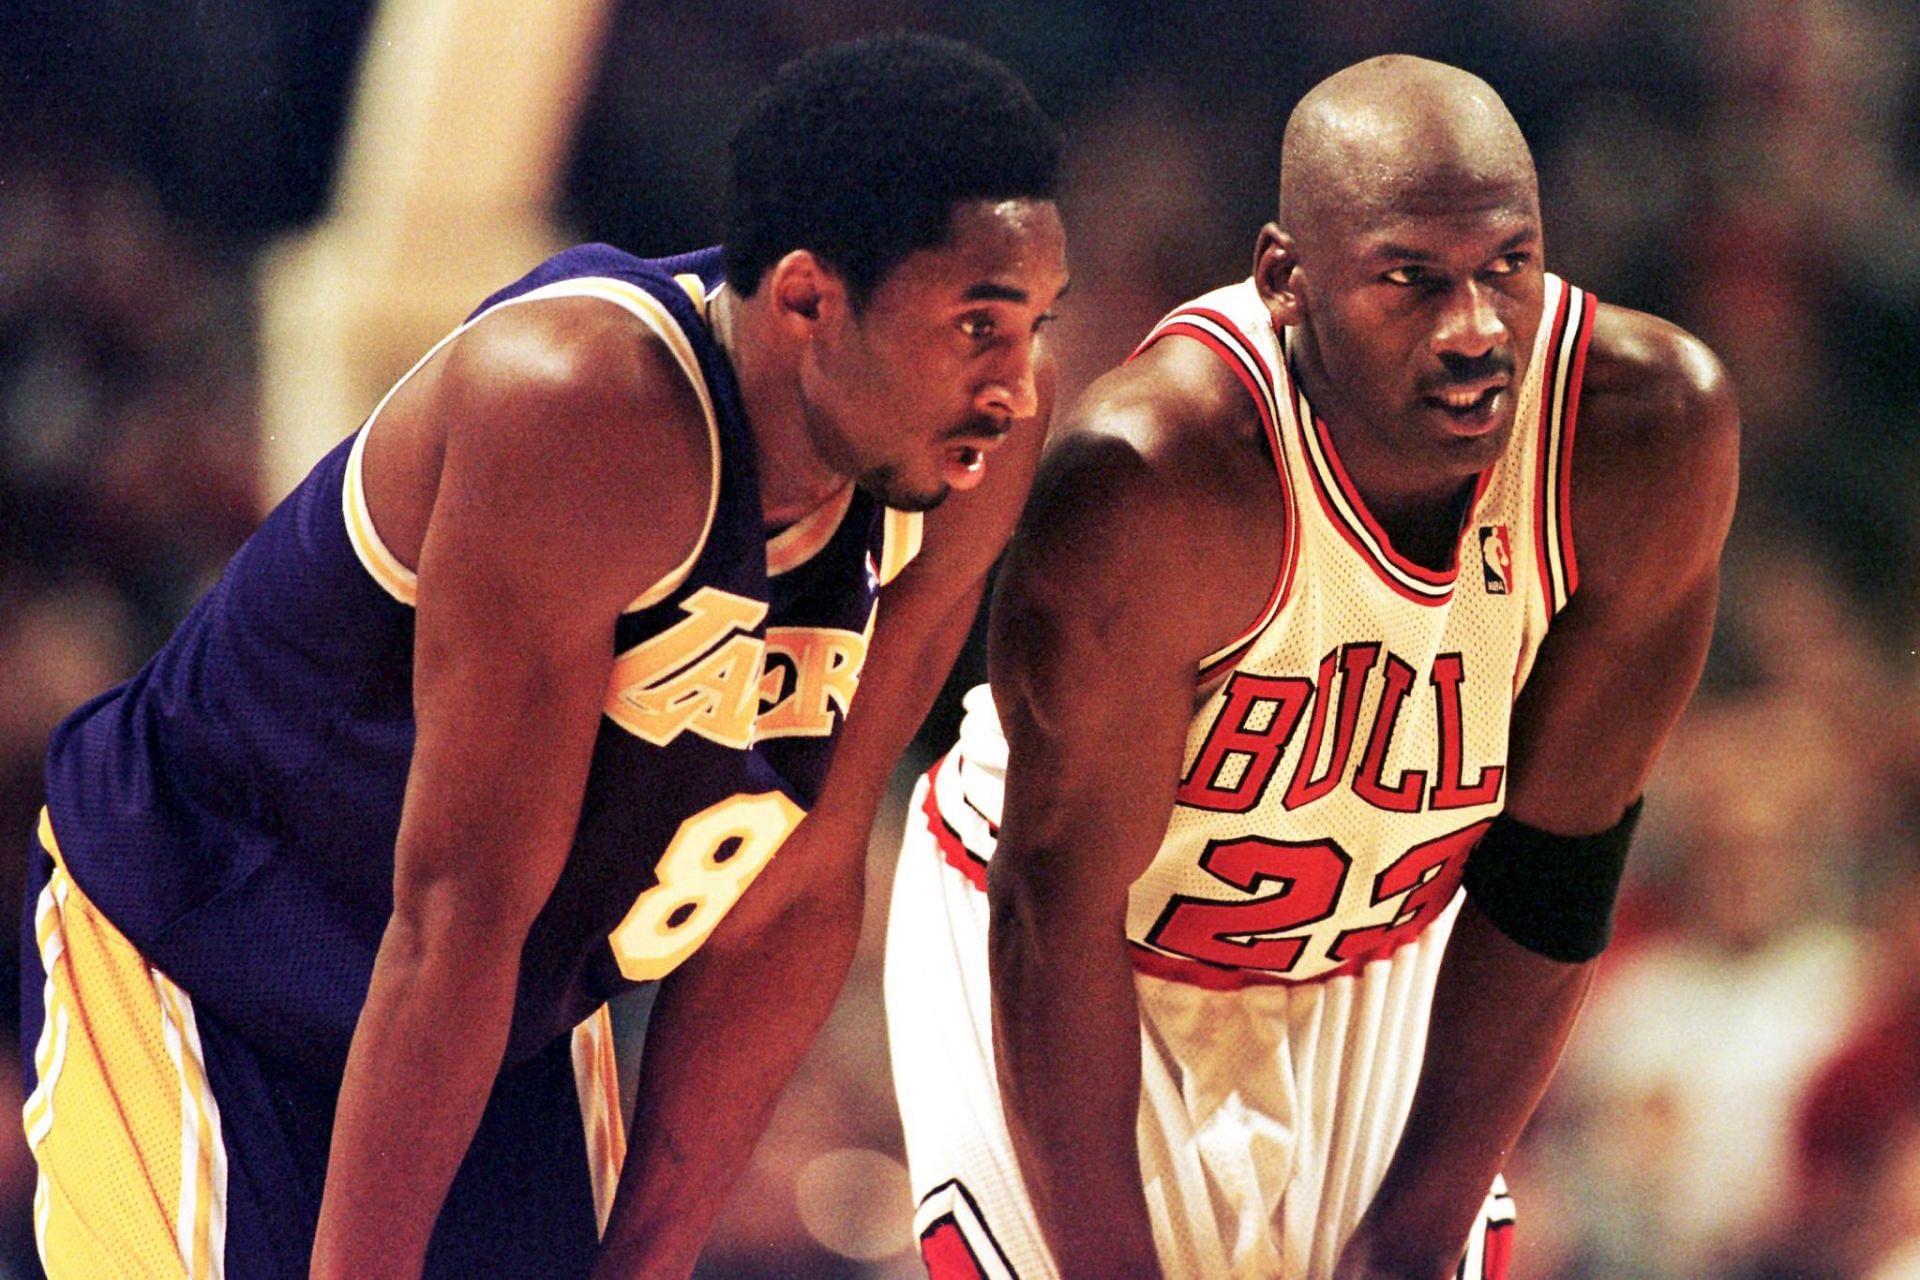 Michael Jordan and Kobe Bryant in action.